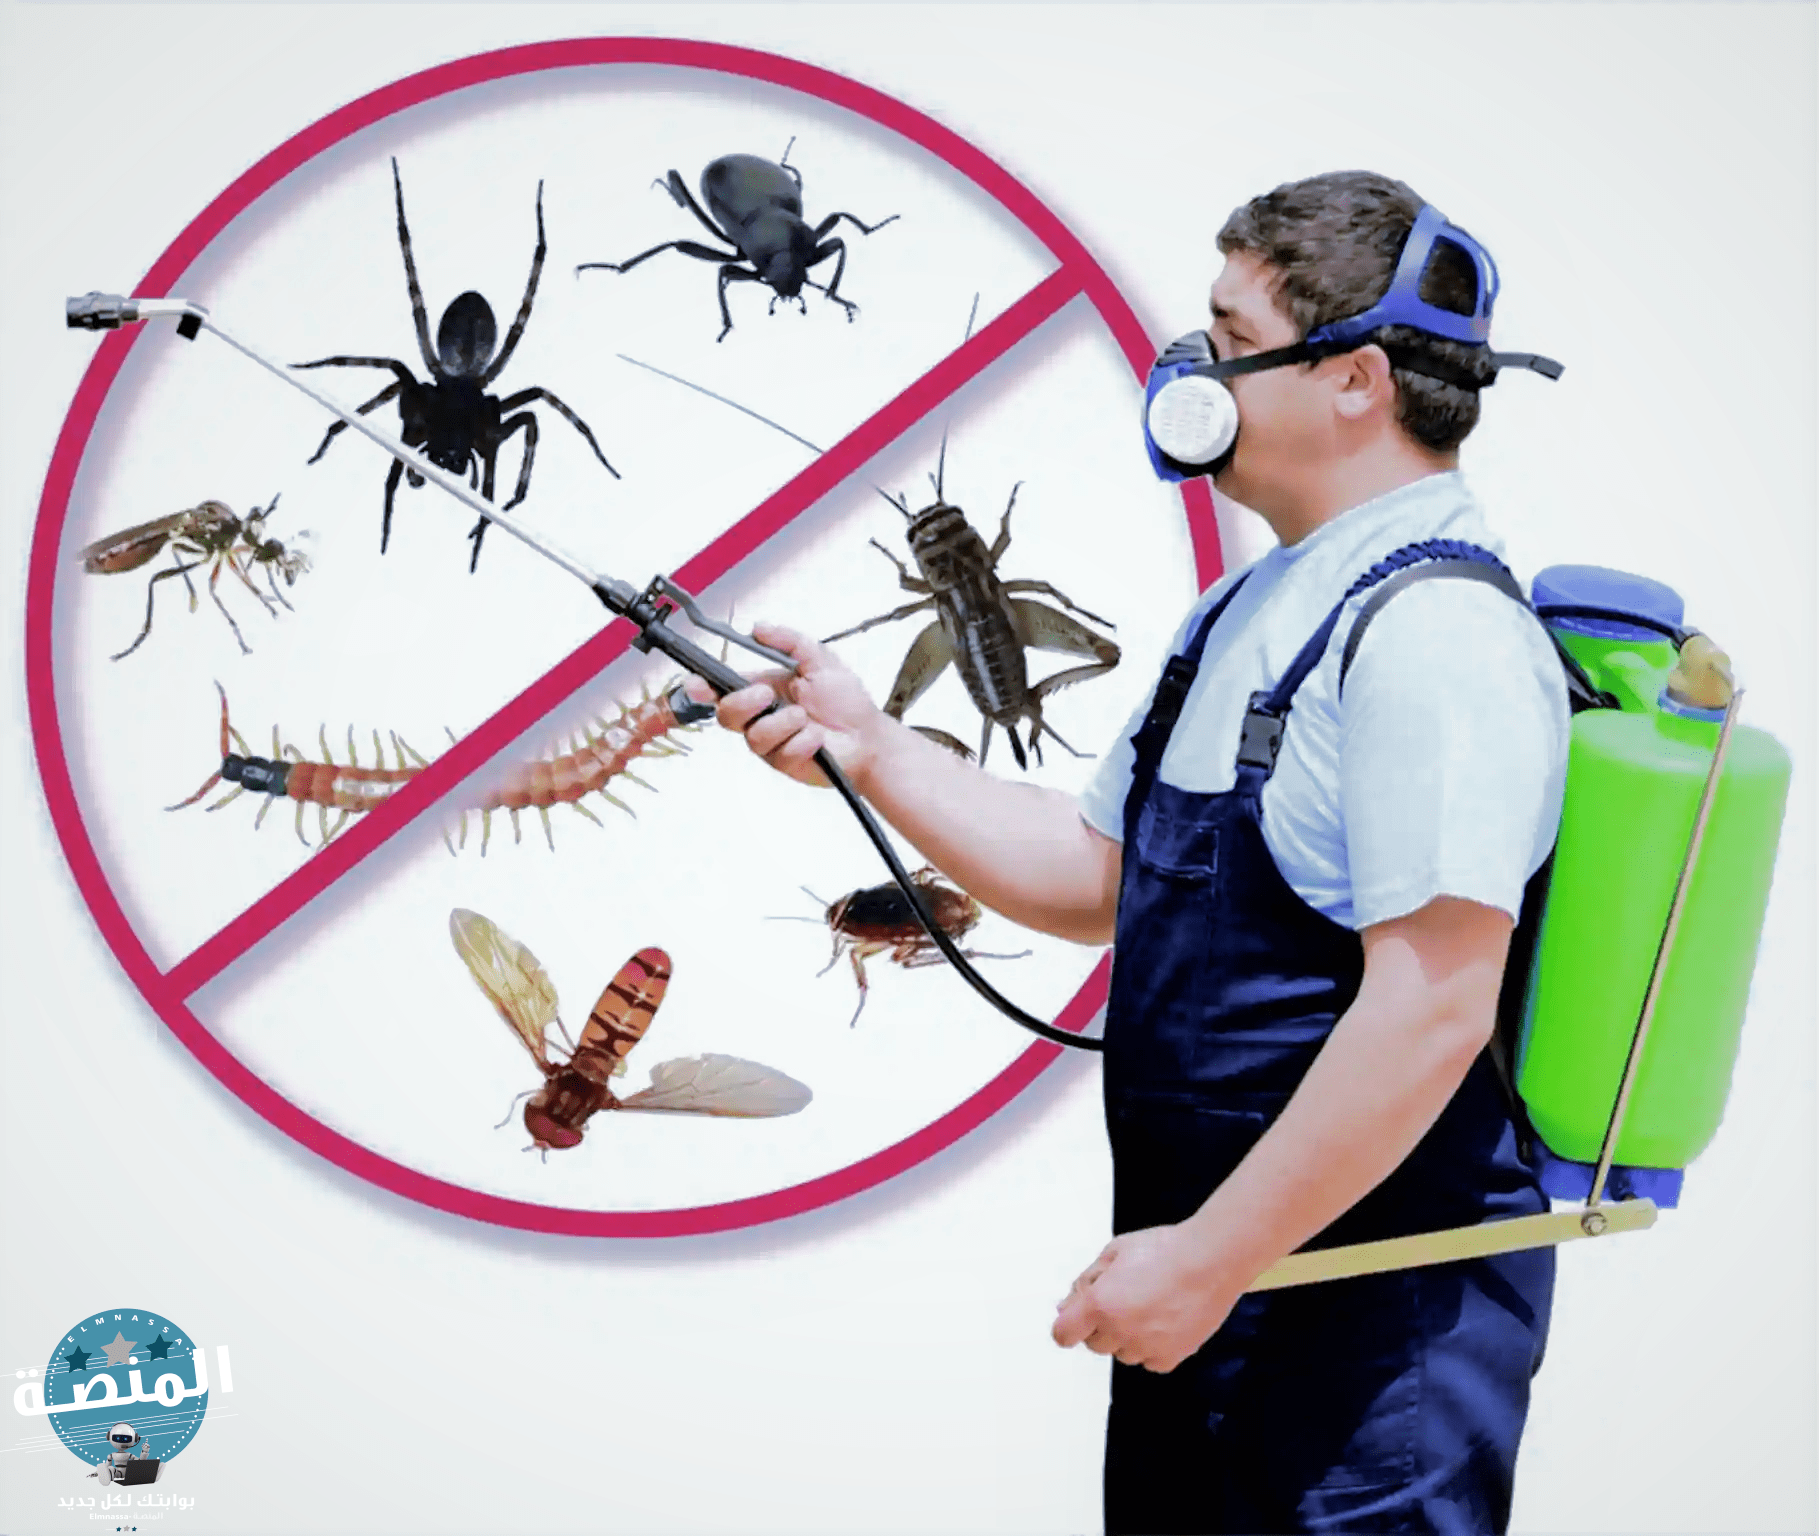 شركات مكافحة حشرات بالسعودية